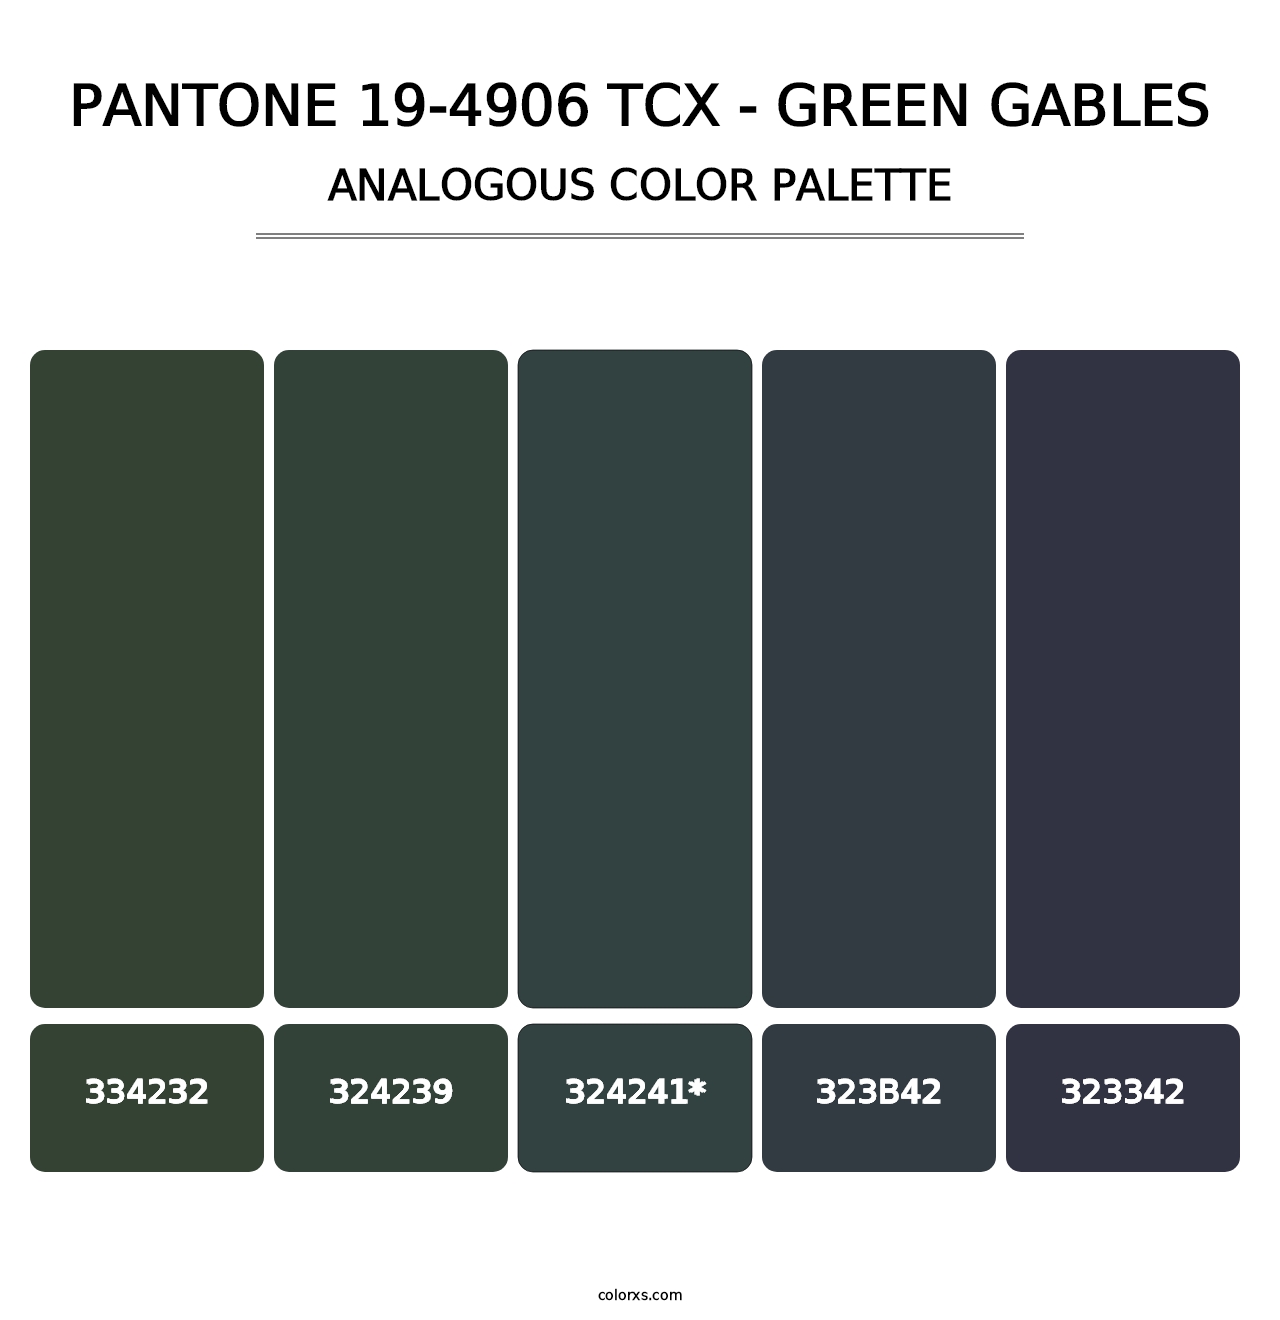 PANTONE 19-4906 TCX - Green Gables - Analogous Color Palette